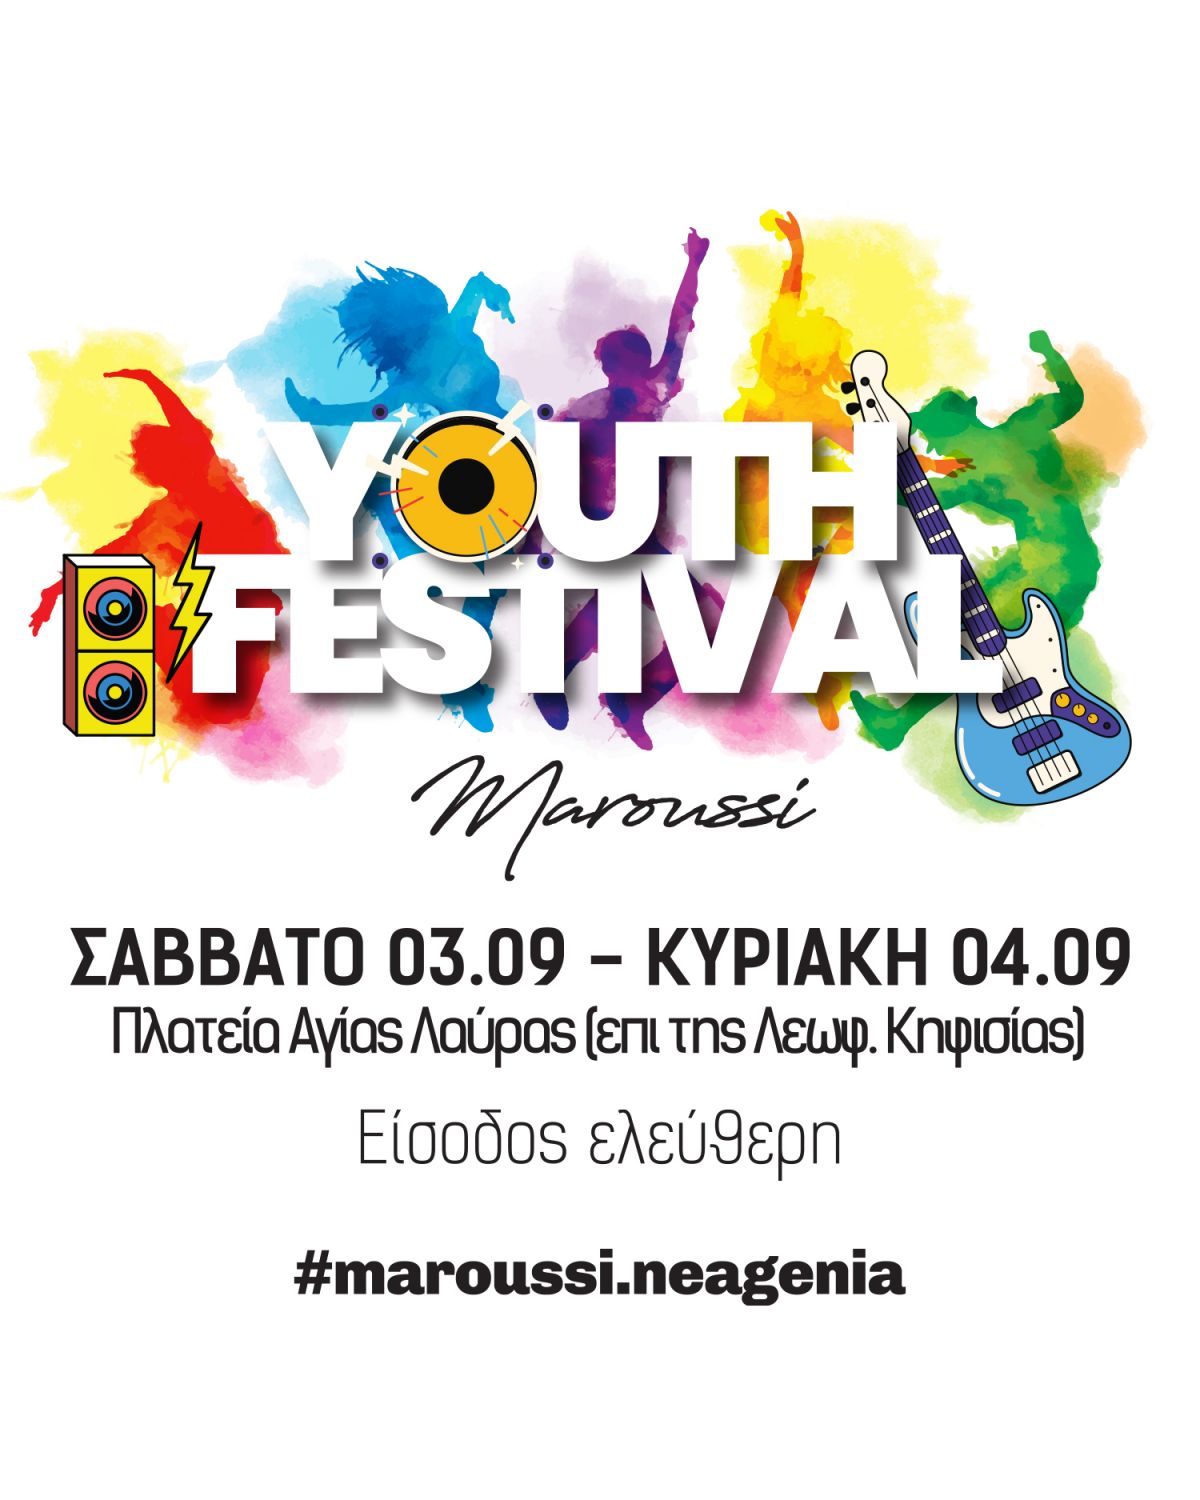 Το “Youth Festival”, μία διήμερη γιορτή έκφρασης, δημιουργίας, ψυχαγωγίας και ανταλλαγής απόψεων του δήμου Αμαρουσίου είναι εδώ!